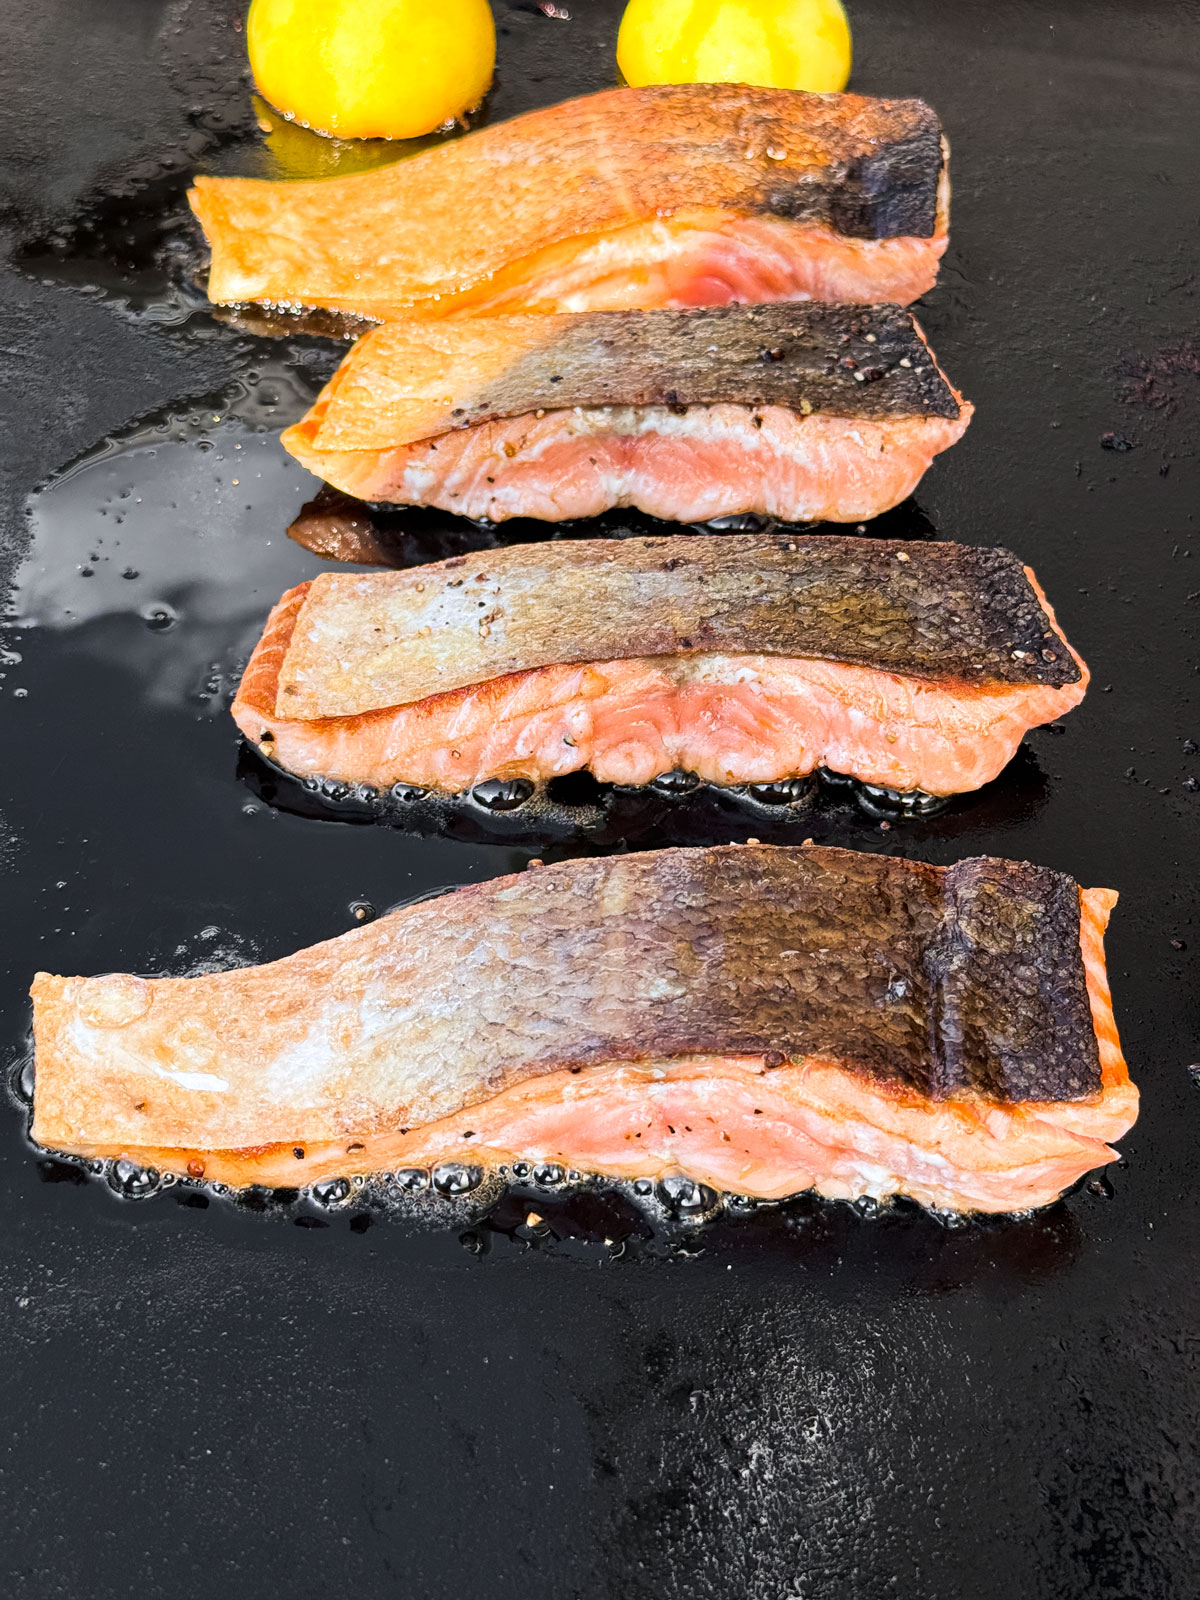 Fillets of salmon on a griddle, crispy skin-side up.